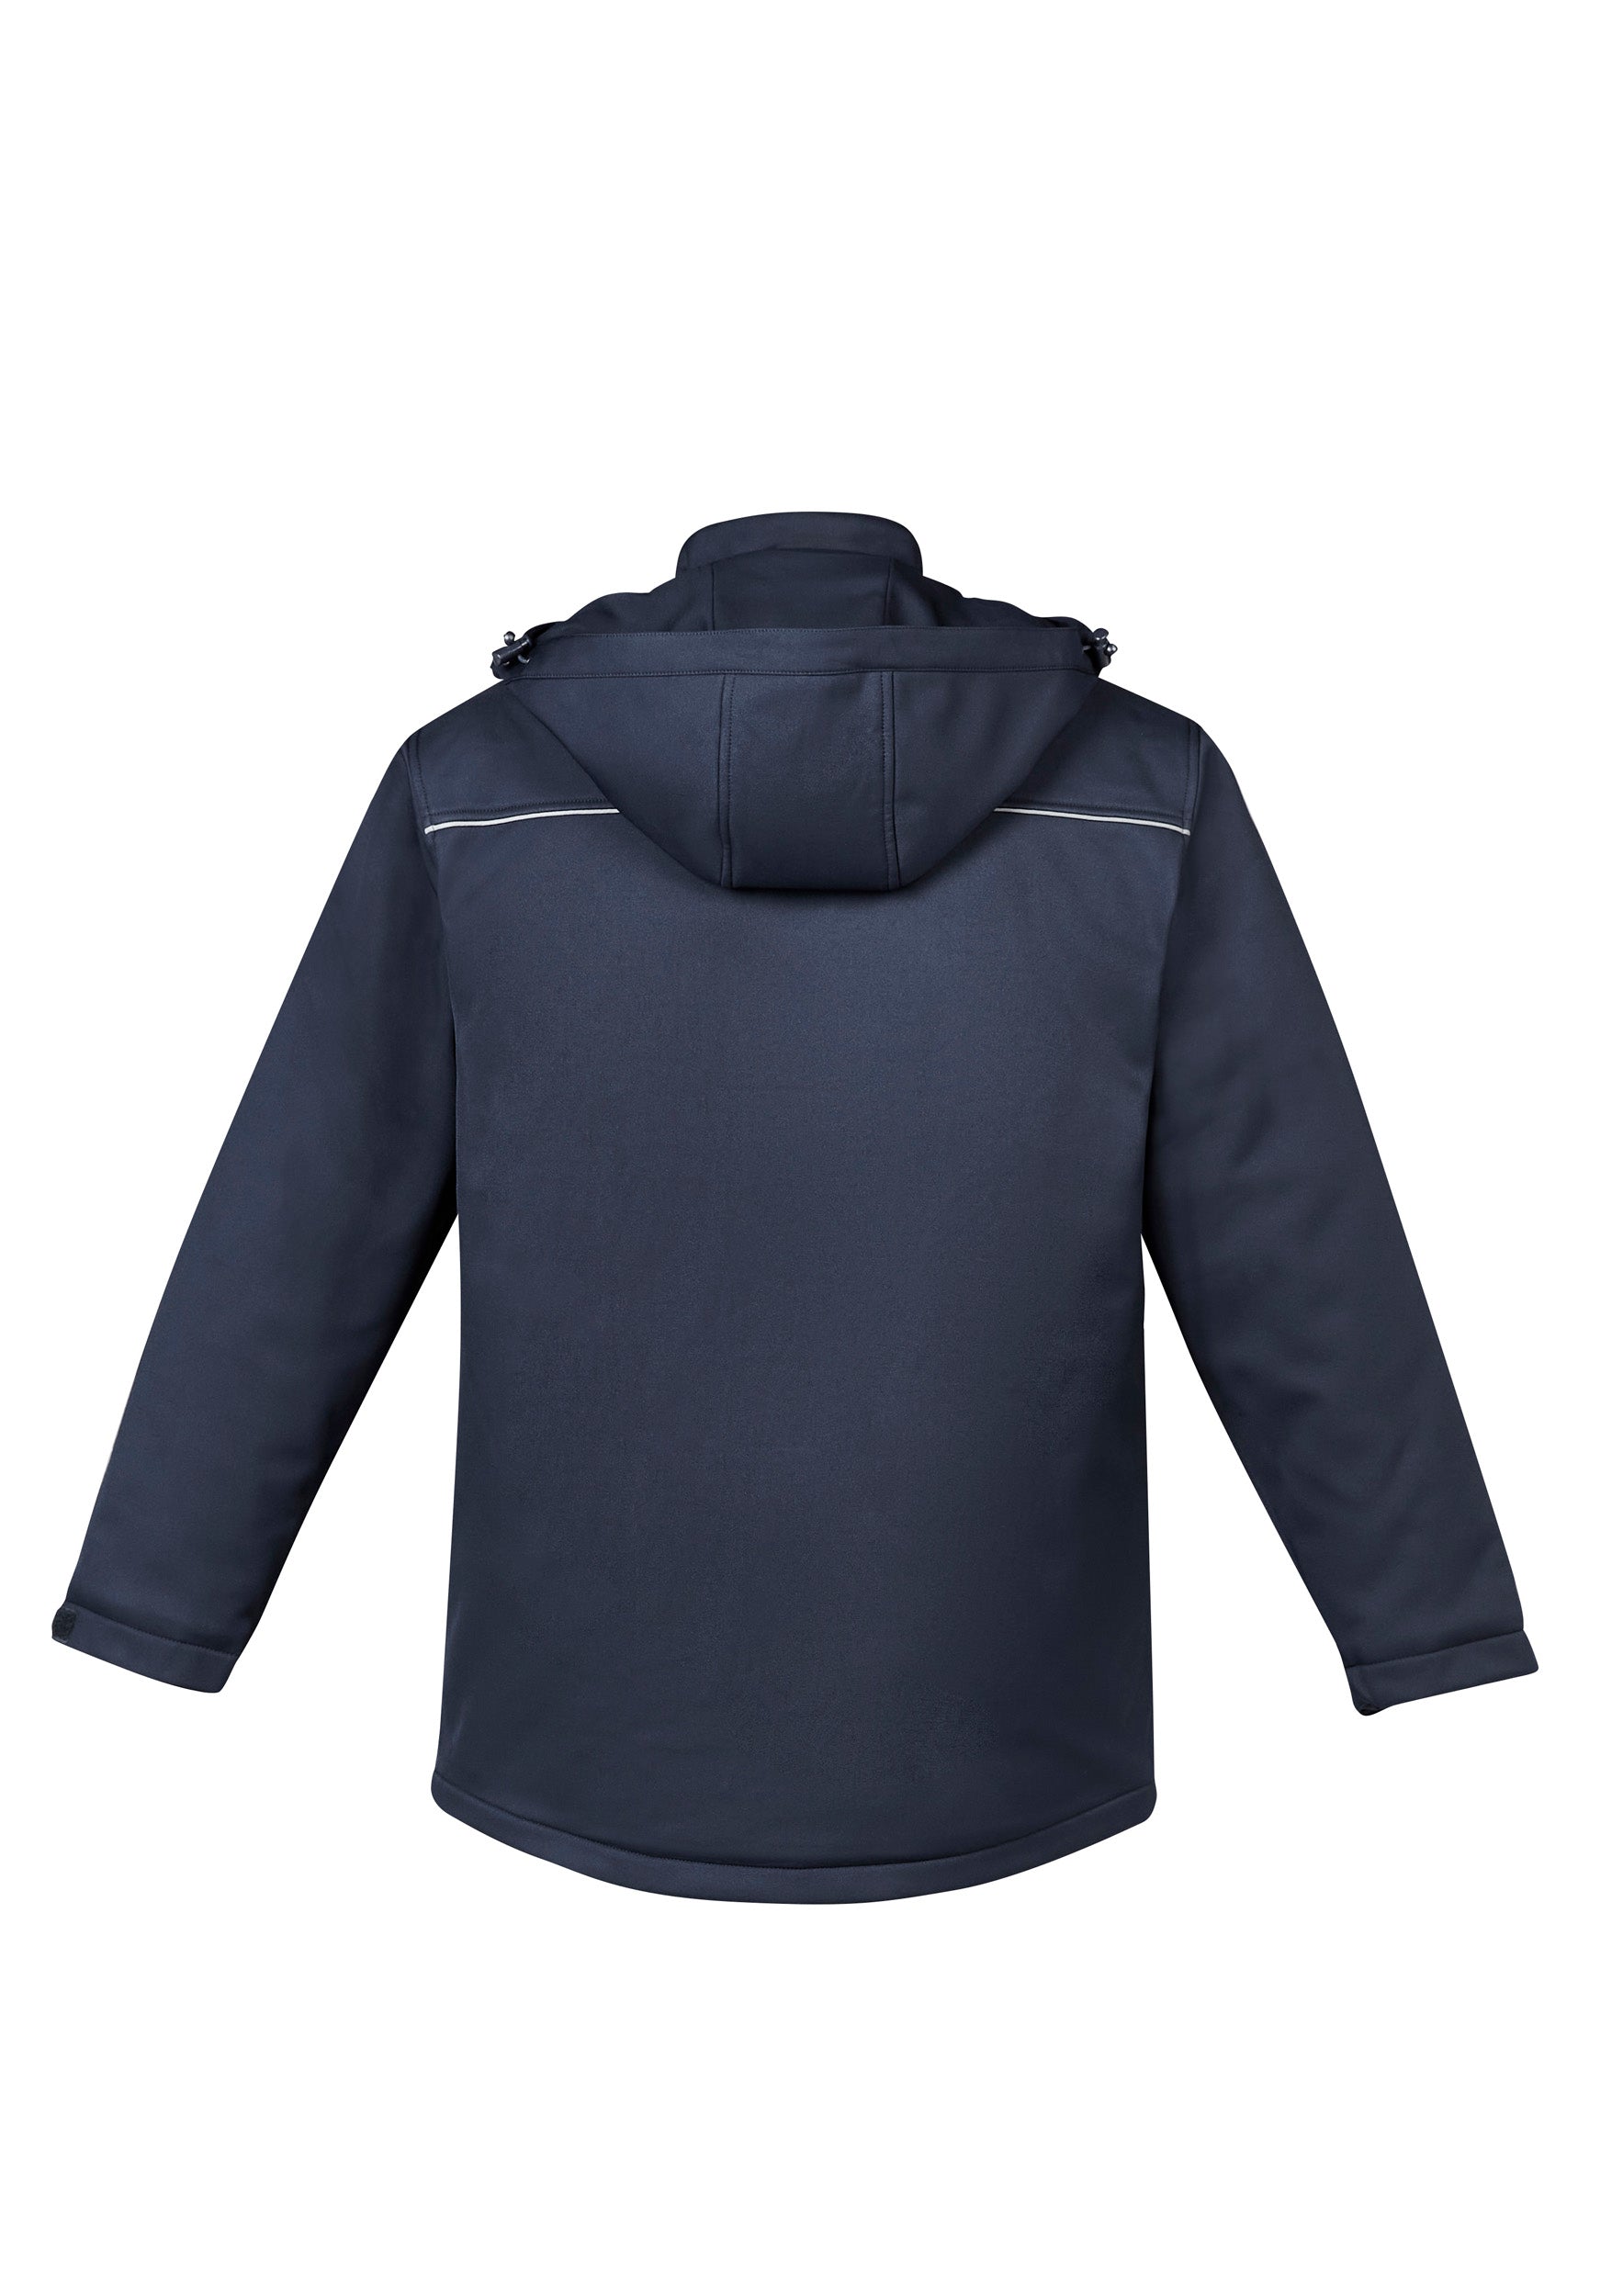 Unisex Antarctic Softshell Jacket